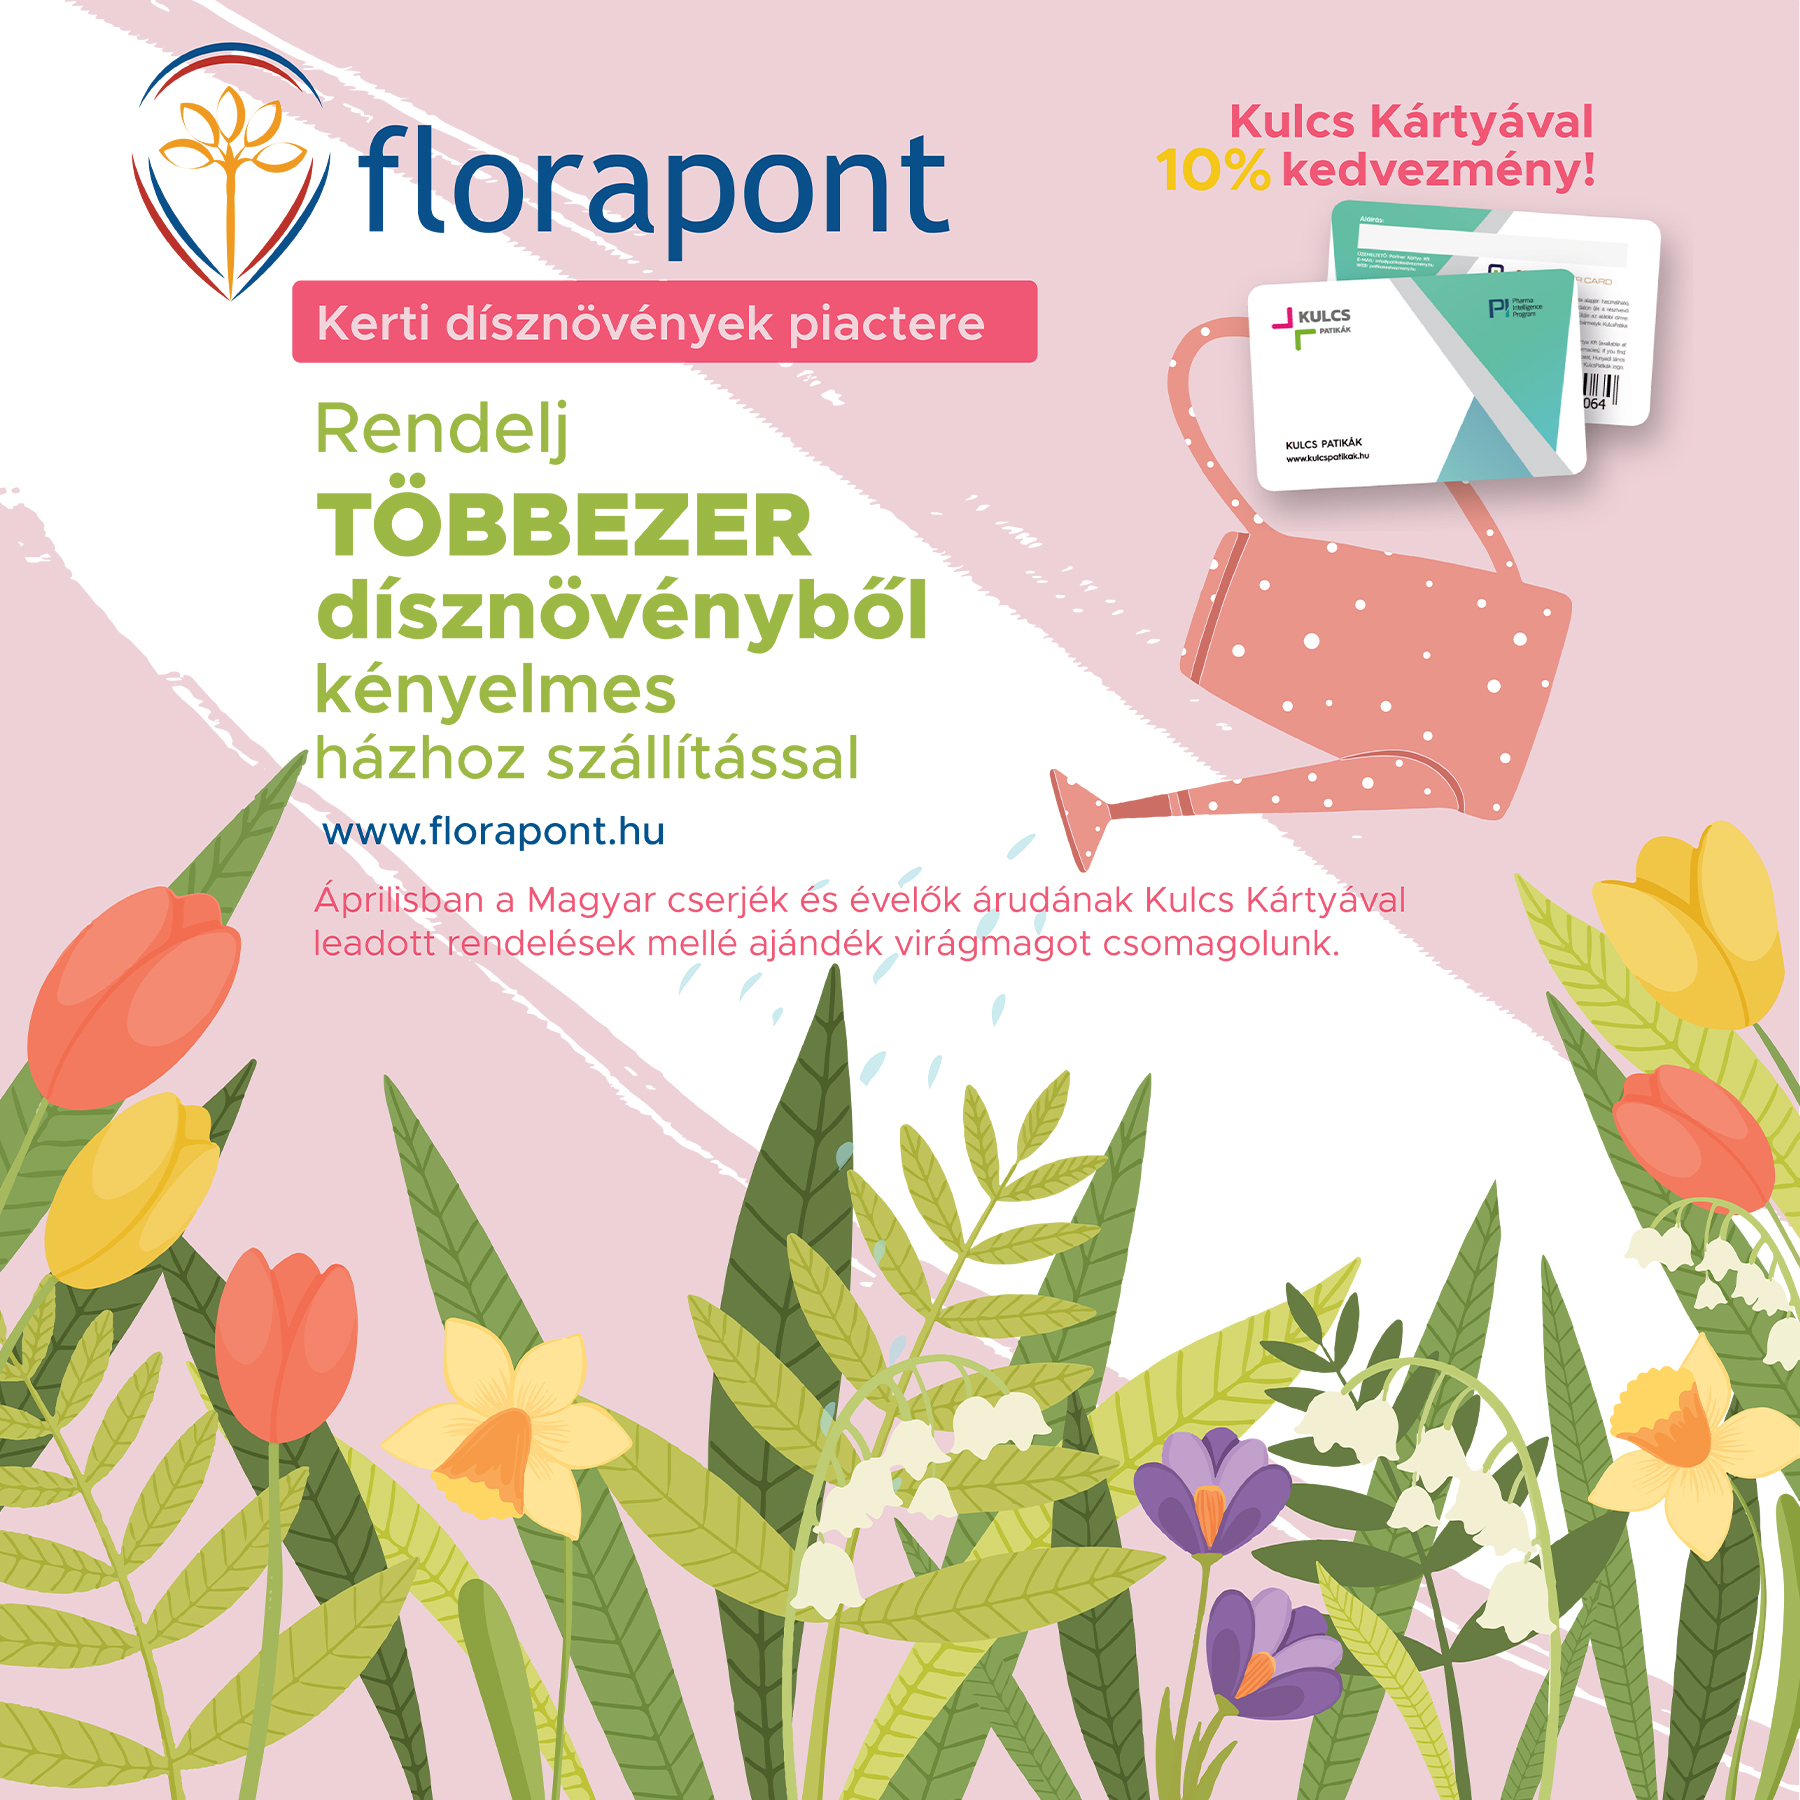 Florapont - kerti dísznövények piactere